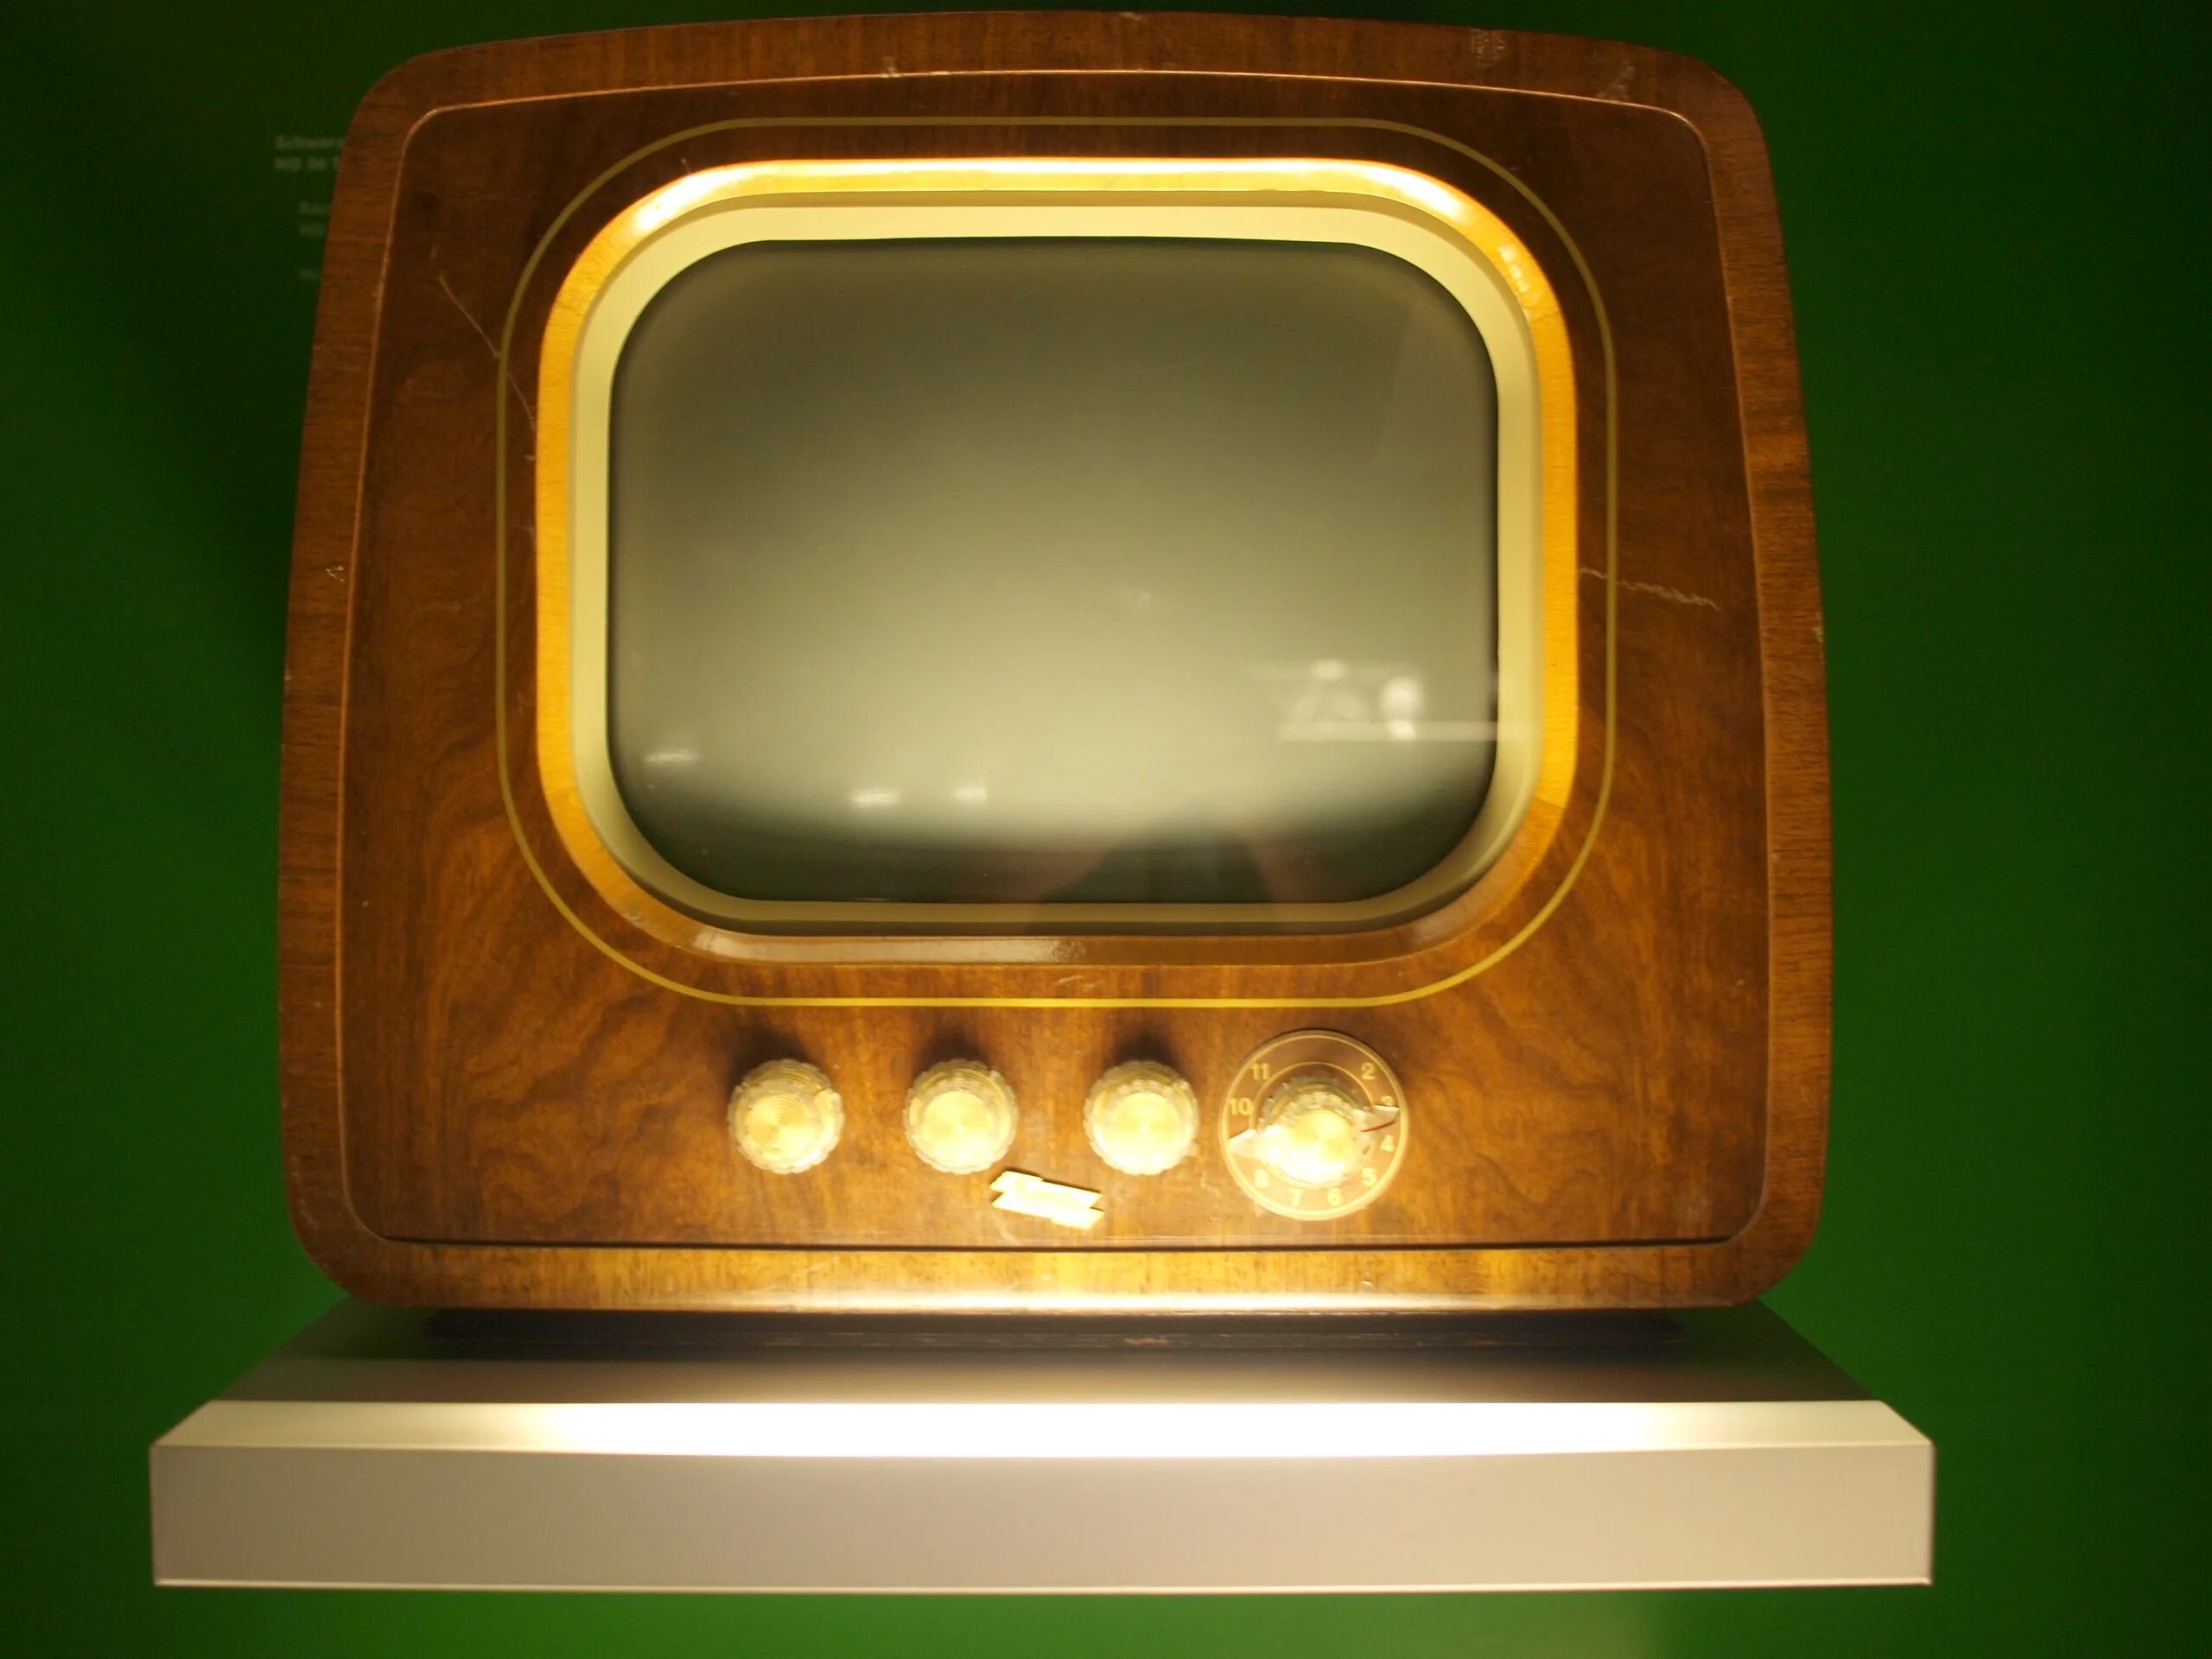 Tv old 2. Первый телевизор. Самый первый телевизор. Старинный телевизор. Телевизор 20 века.